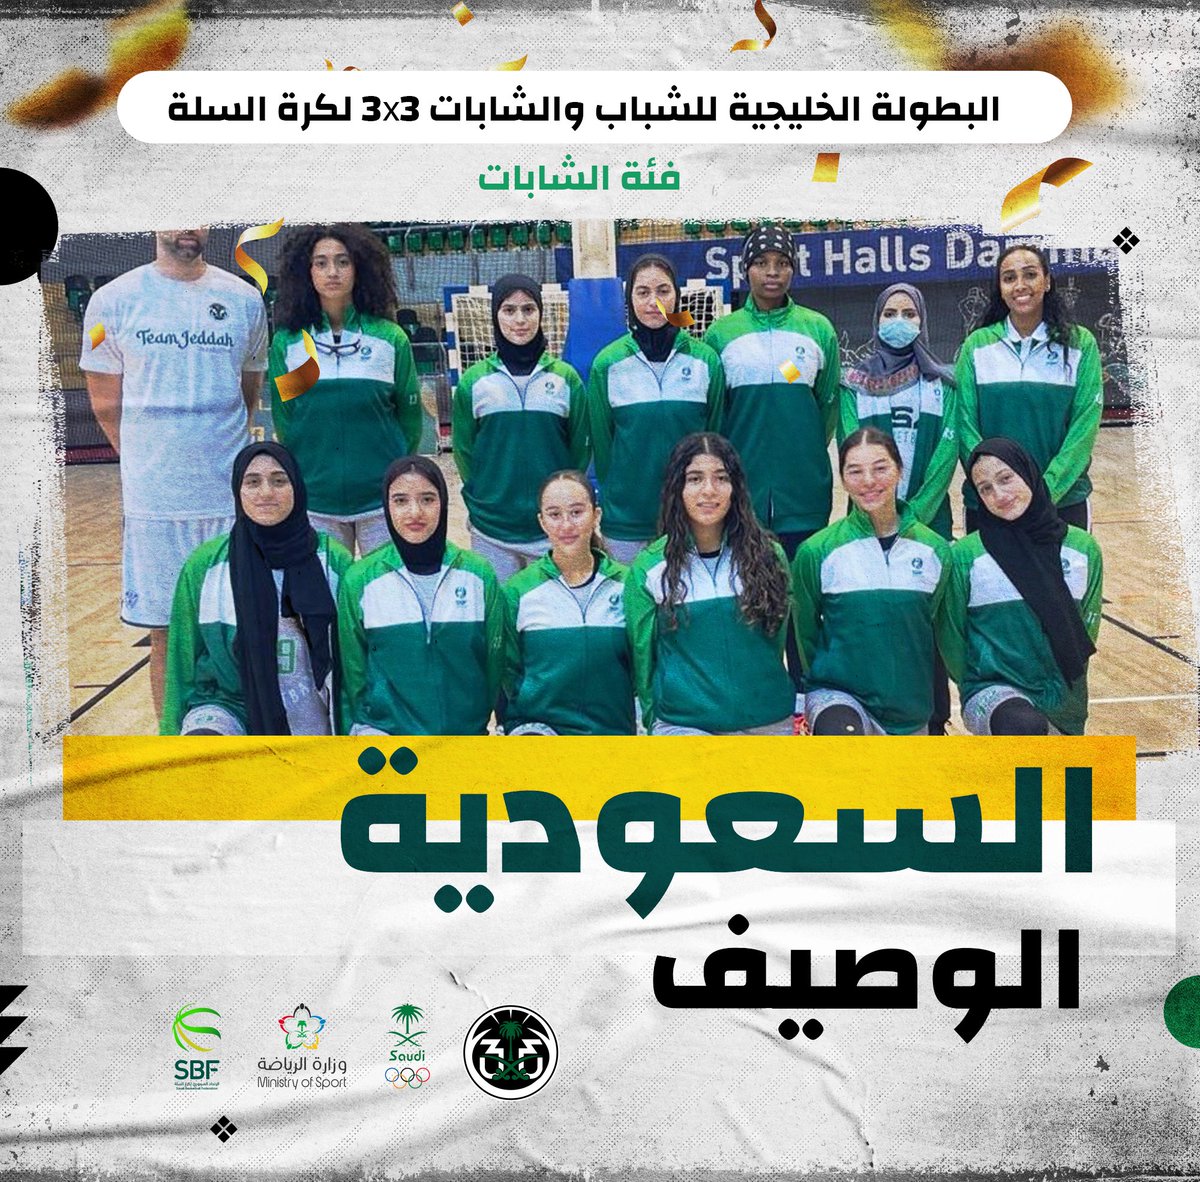 المنتخب السعودي للشابات ثاني بطولة الخليج 3X3 لكرة السلة تحت 18 سنة في سلطنة عمان 🇴🇲. الف مبرووك 🥈